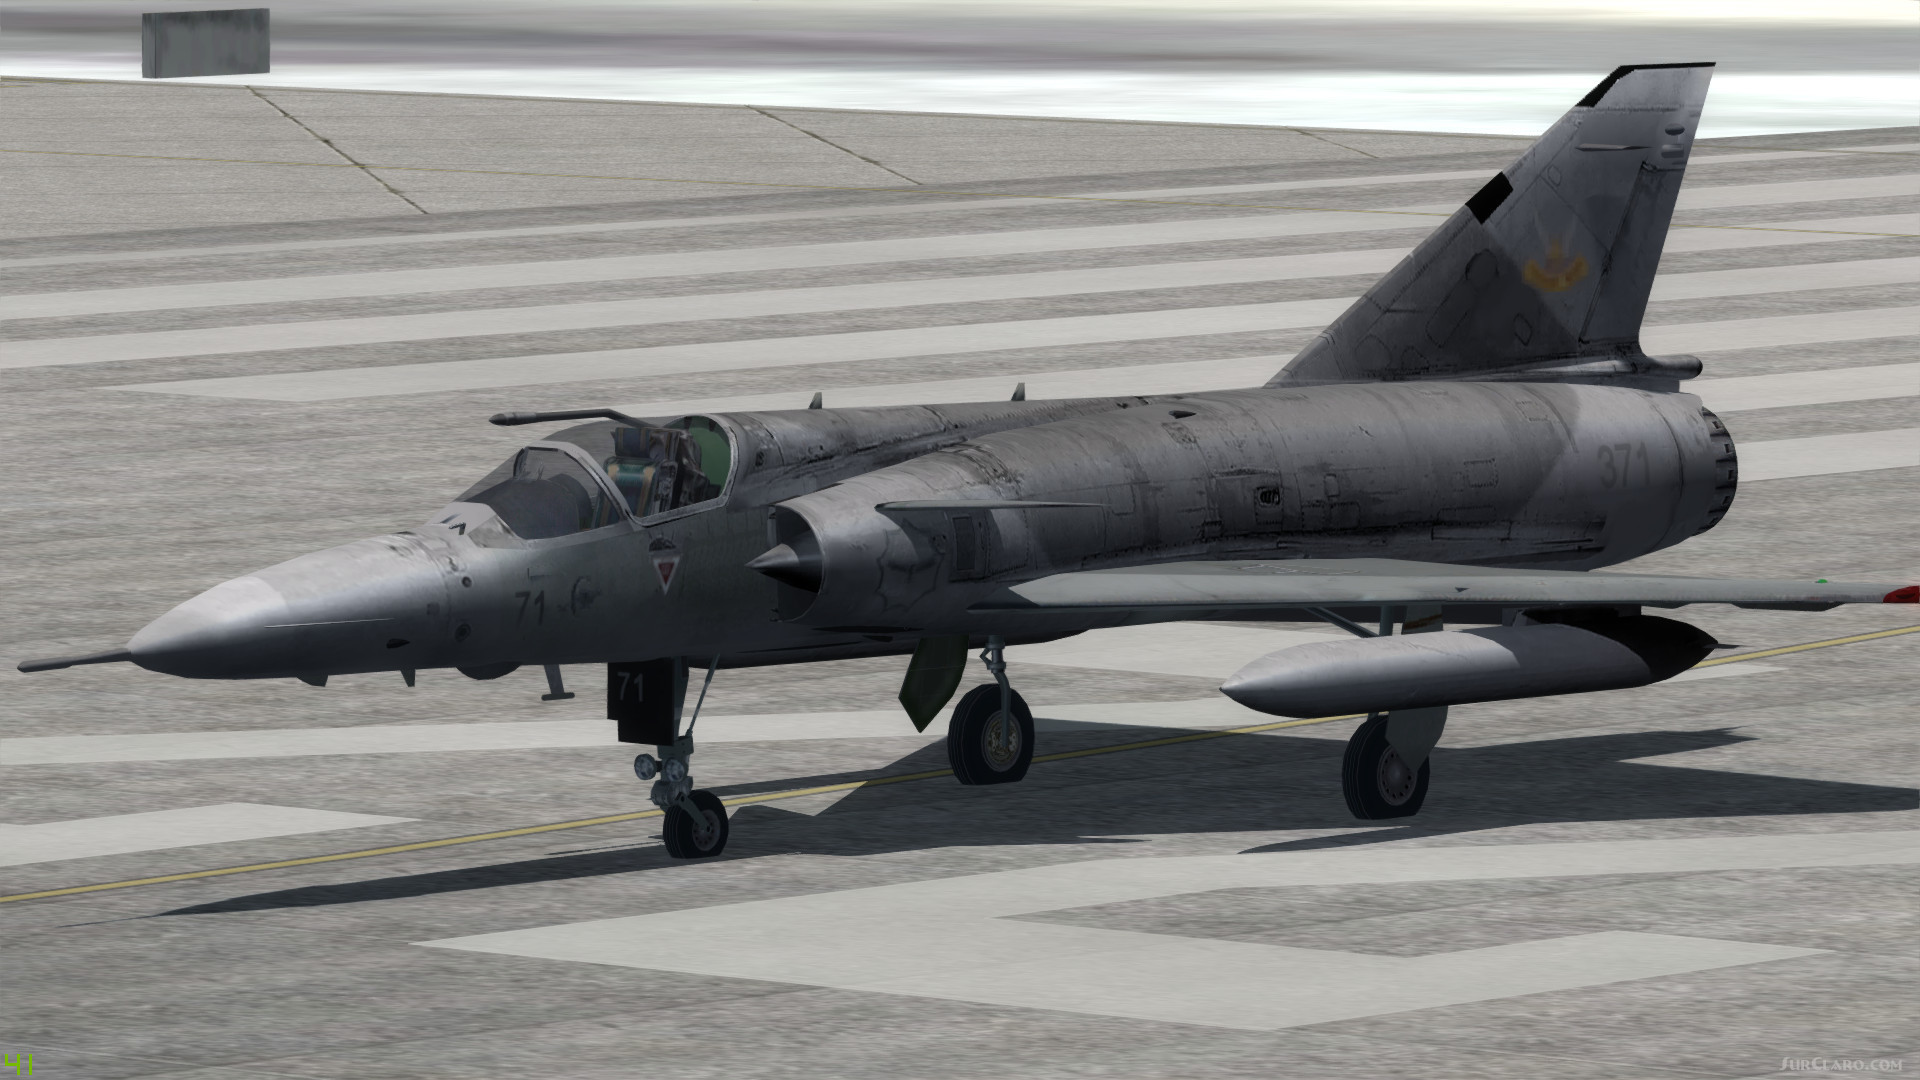 FSX P3D Atlas Cheetah South African Air Force Military aircraft